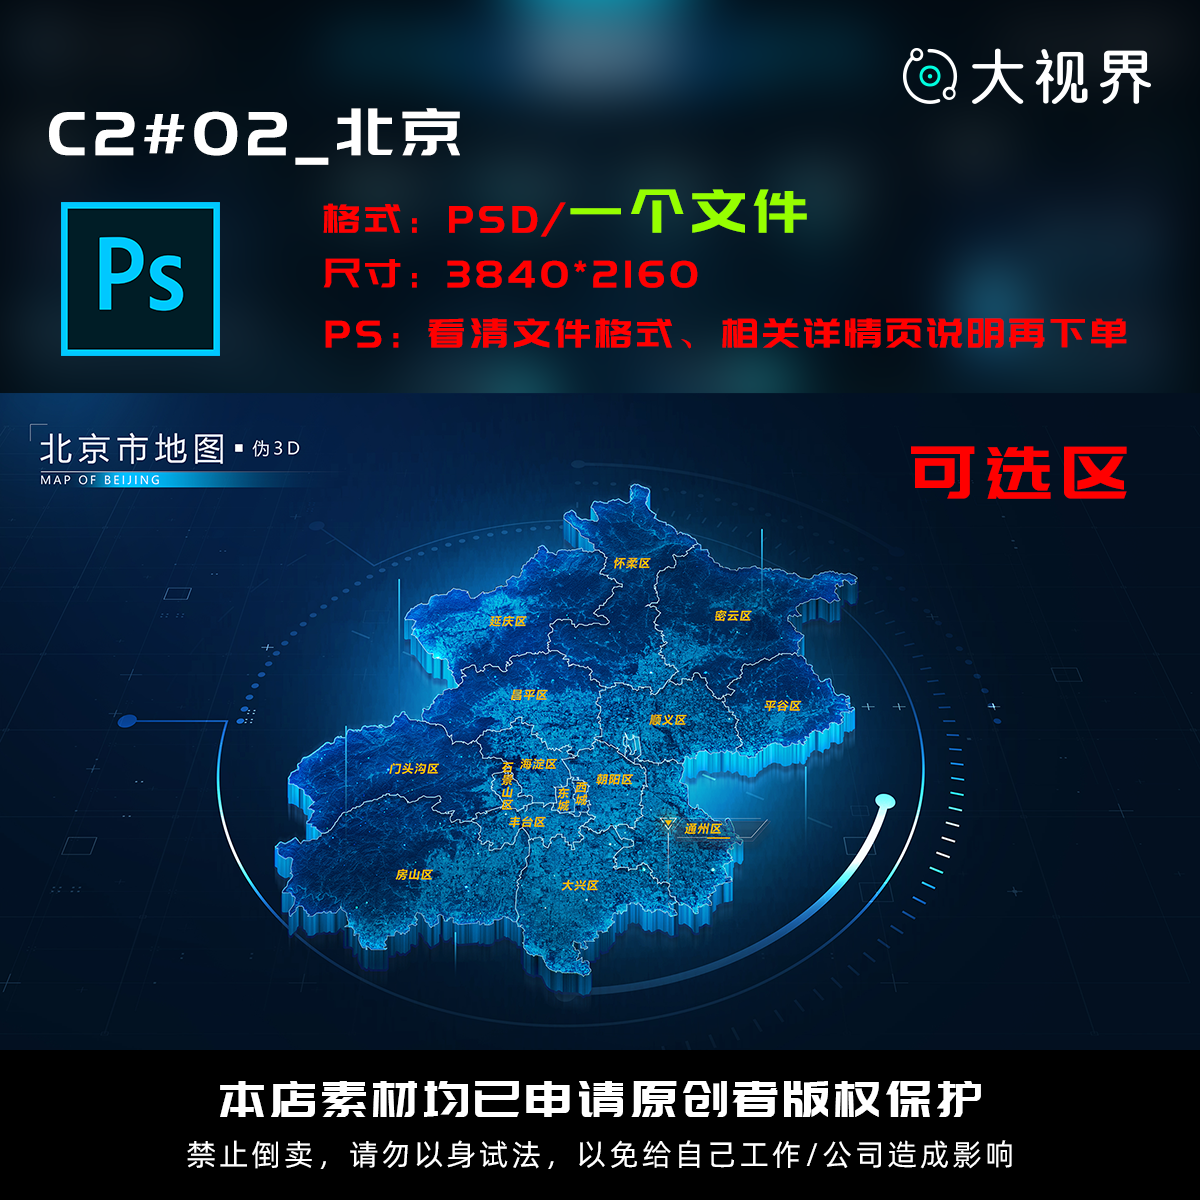 C2#02_科技感数据可视化立体北京数据地图psd源文件分层设计素材